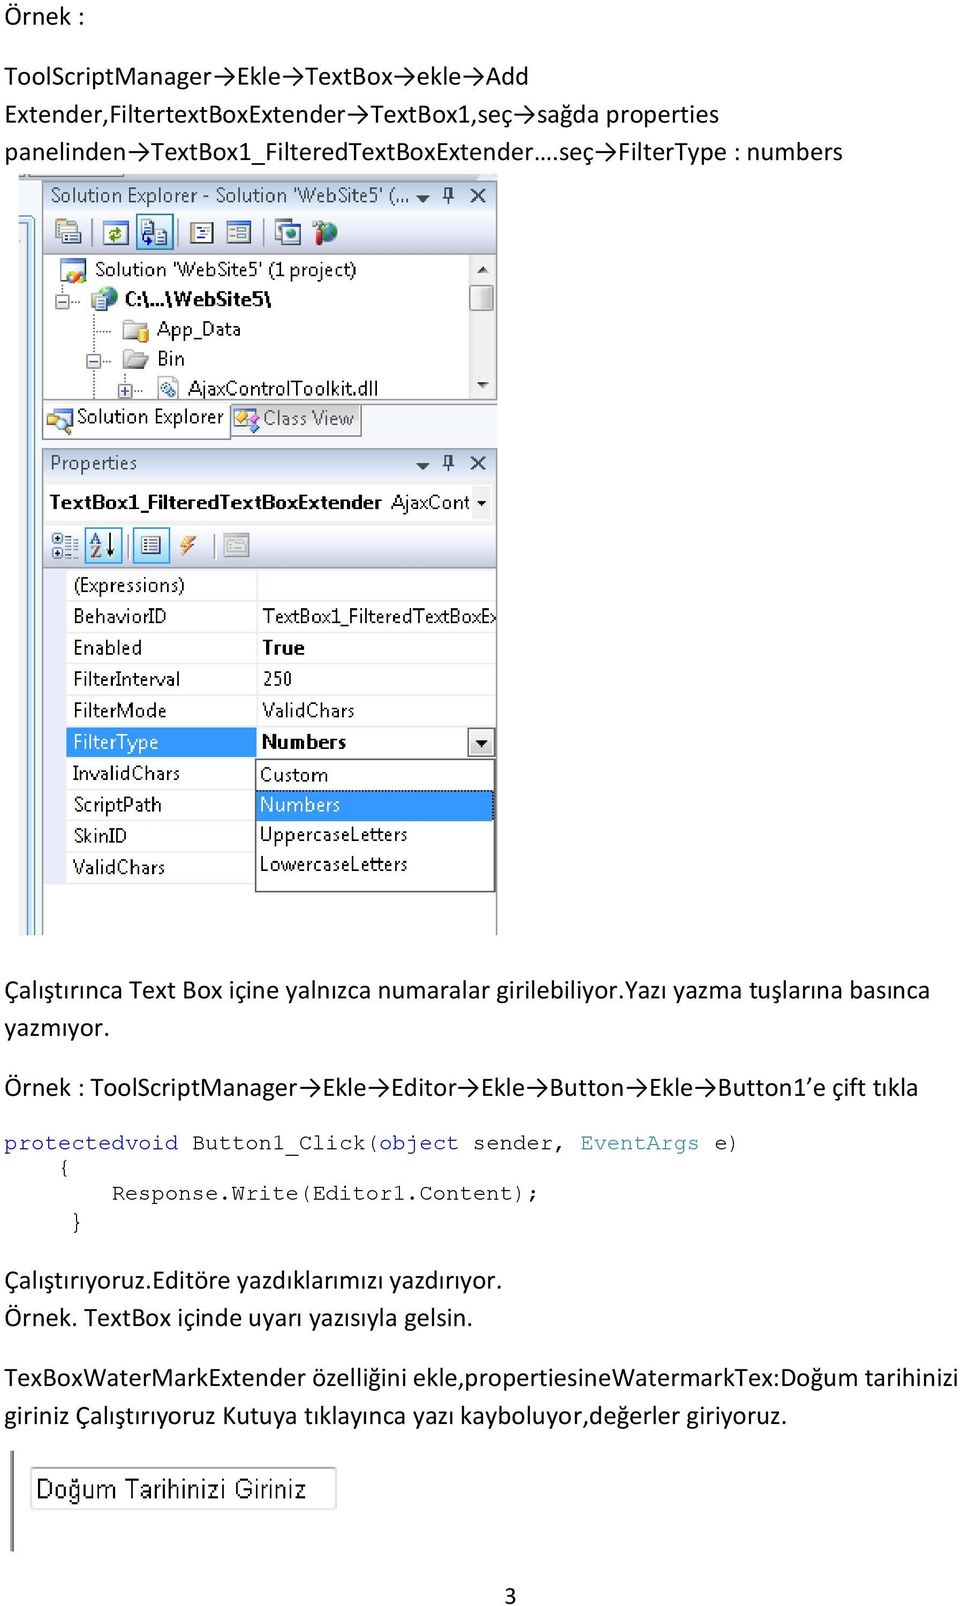 Örnek : ToolScriptManager Ekle Editor Ekle Button Ekle Button1 e çift tıkla Response.Write(Editor1.Content); Çalıştırıyoruz.Editöre yazdıklarımızı yazdırıyor.